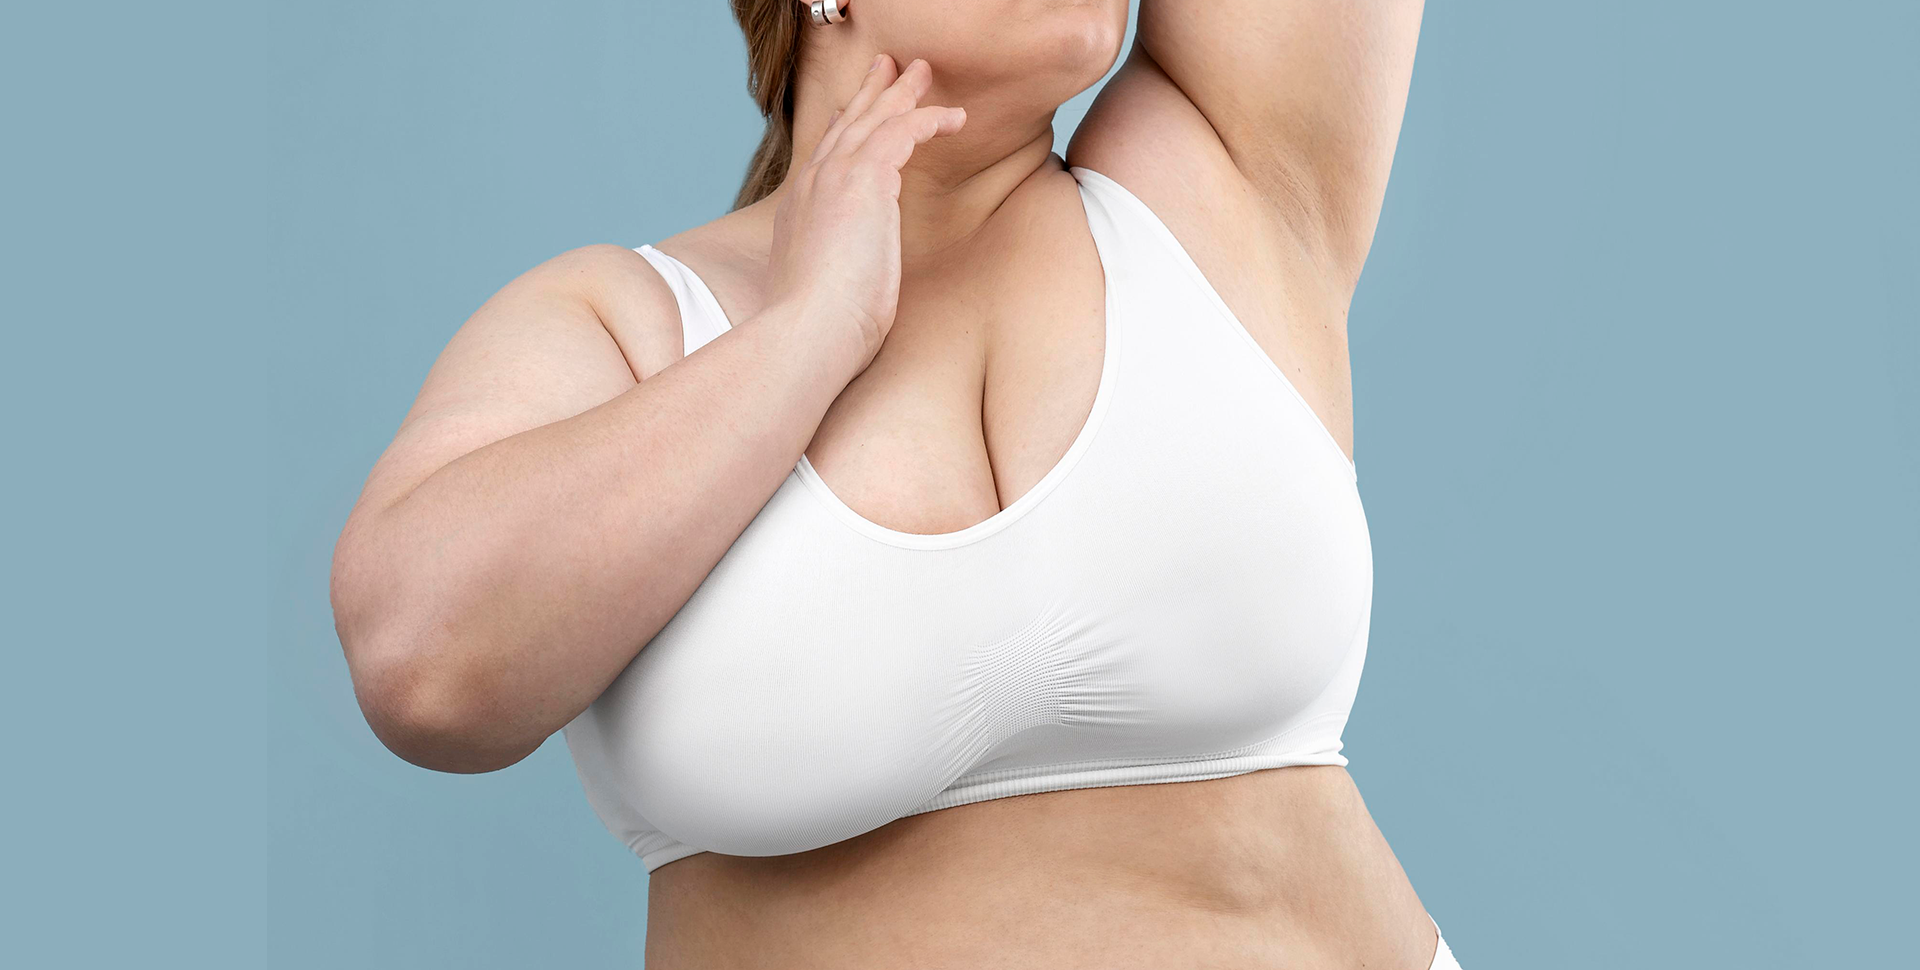 Mulher de top com mamas pesadas, caso que pode passar por uma mamoplastia redutora.